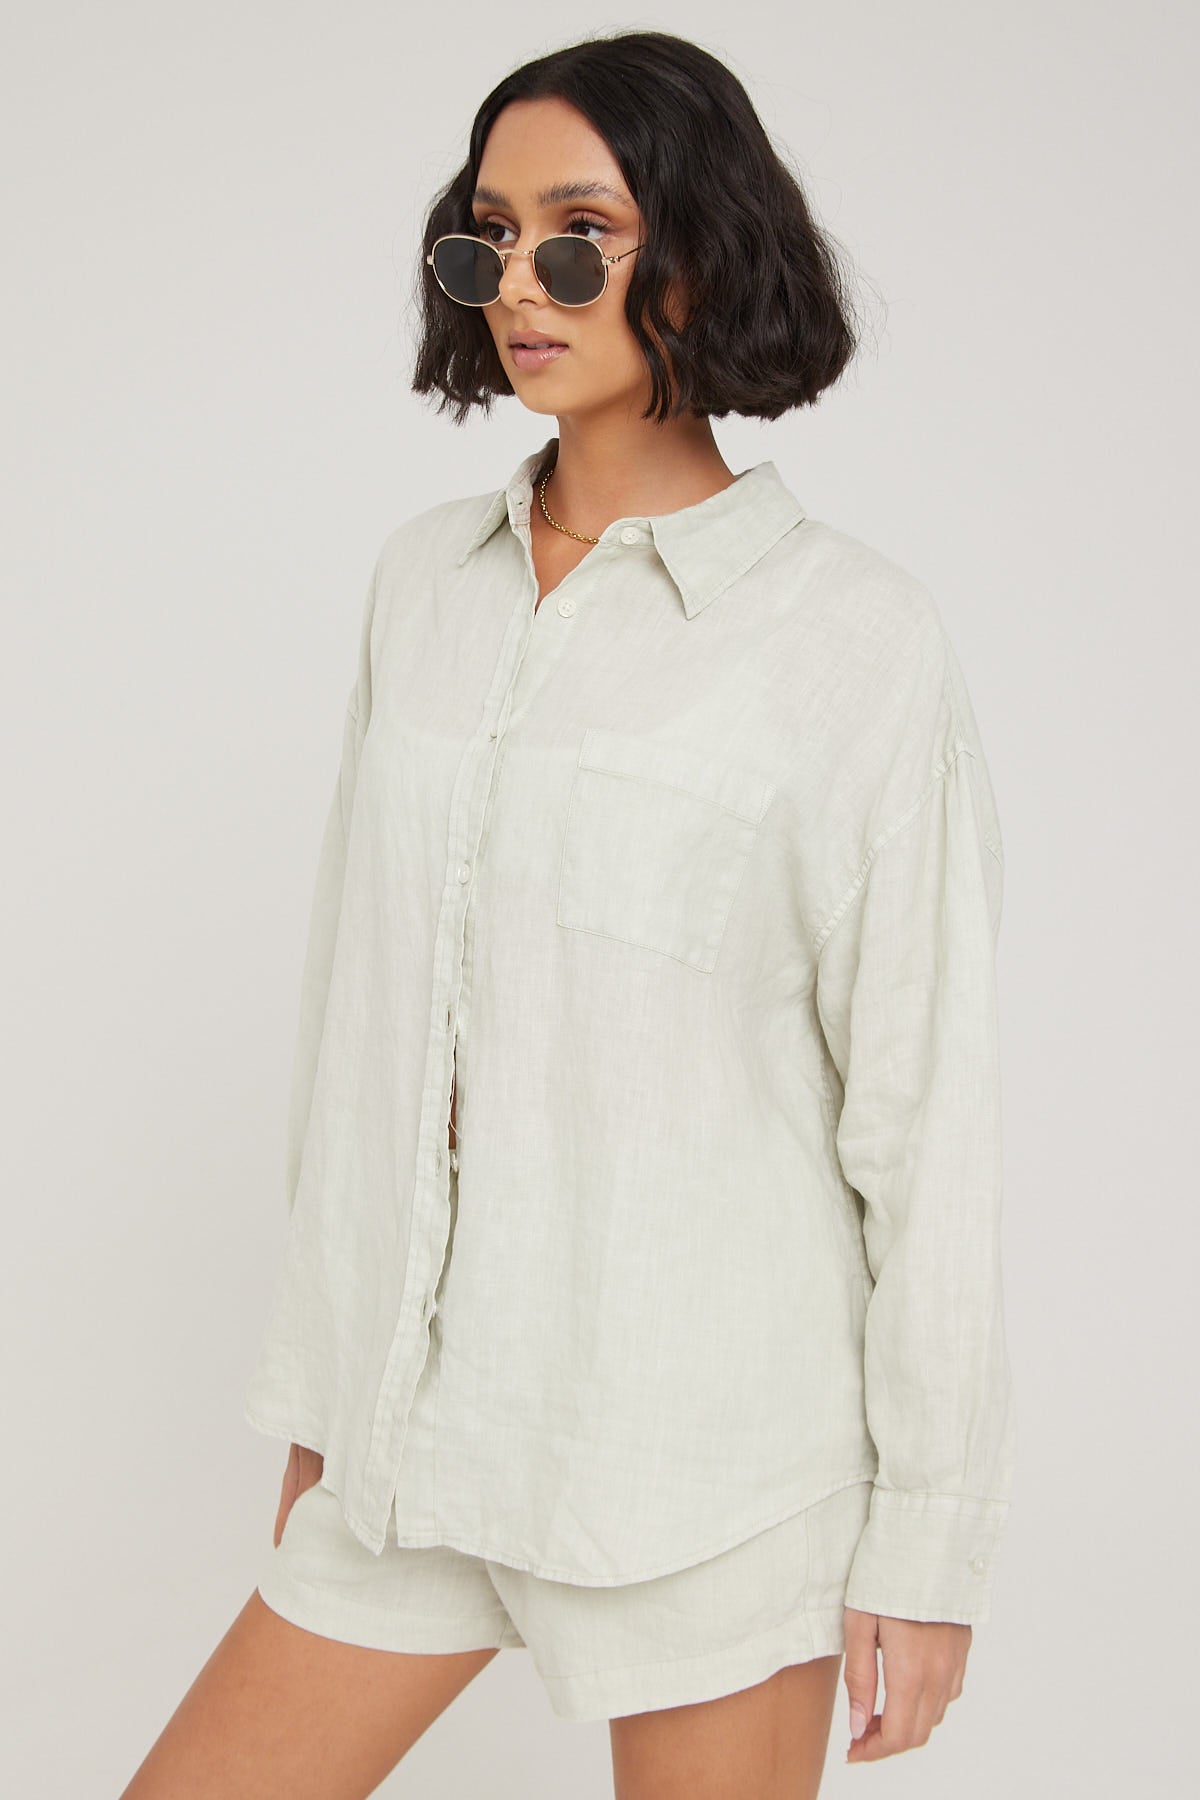 Academy Brand Hampton Linen Shirt Sage Green